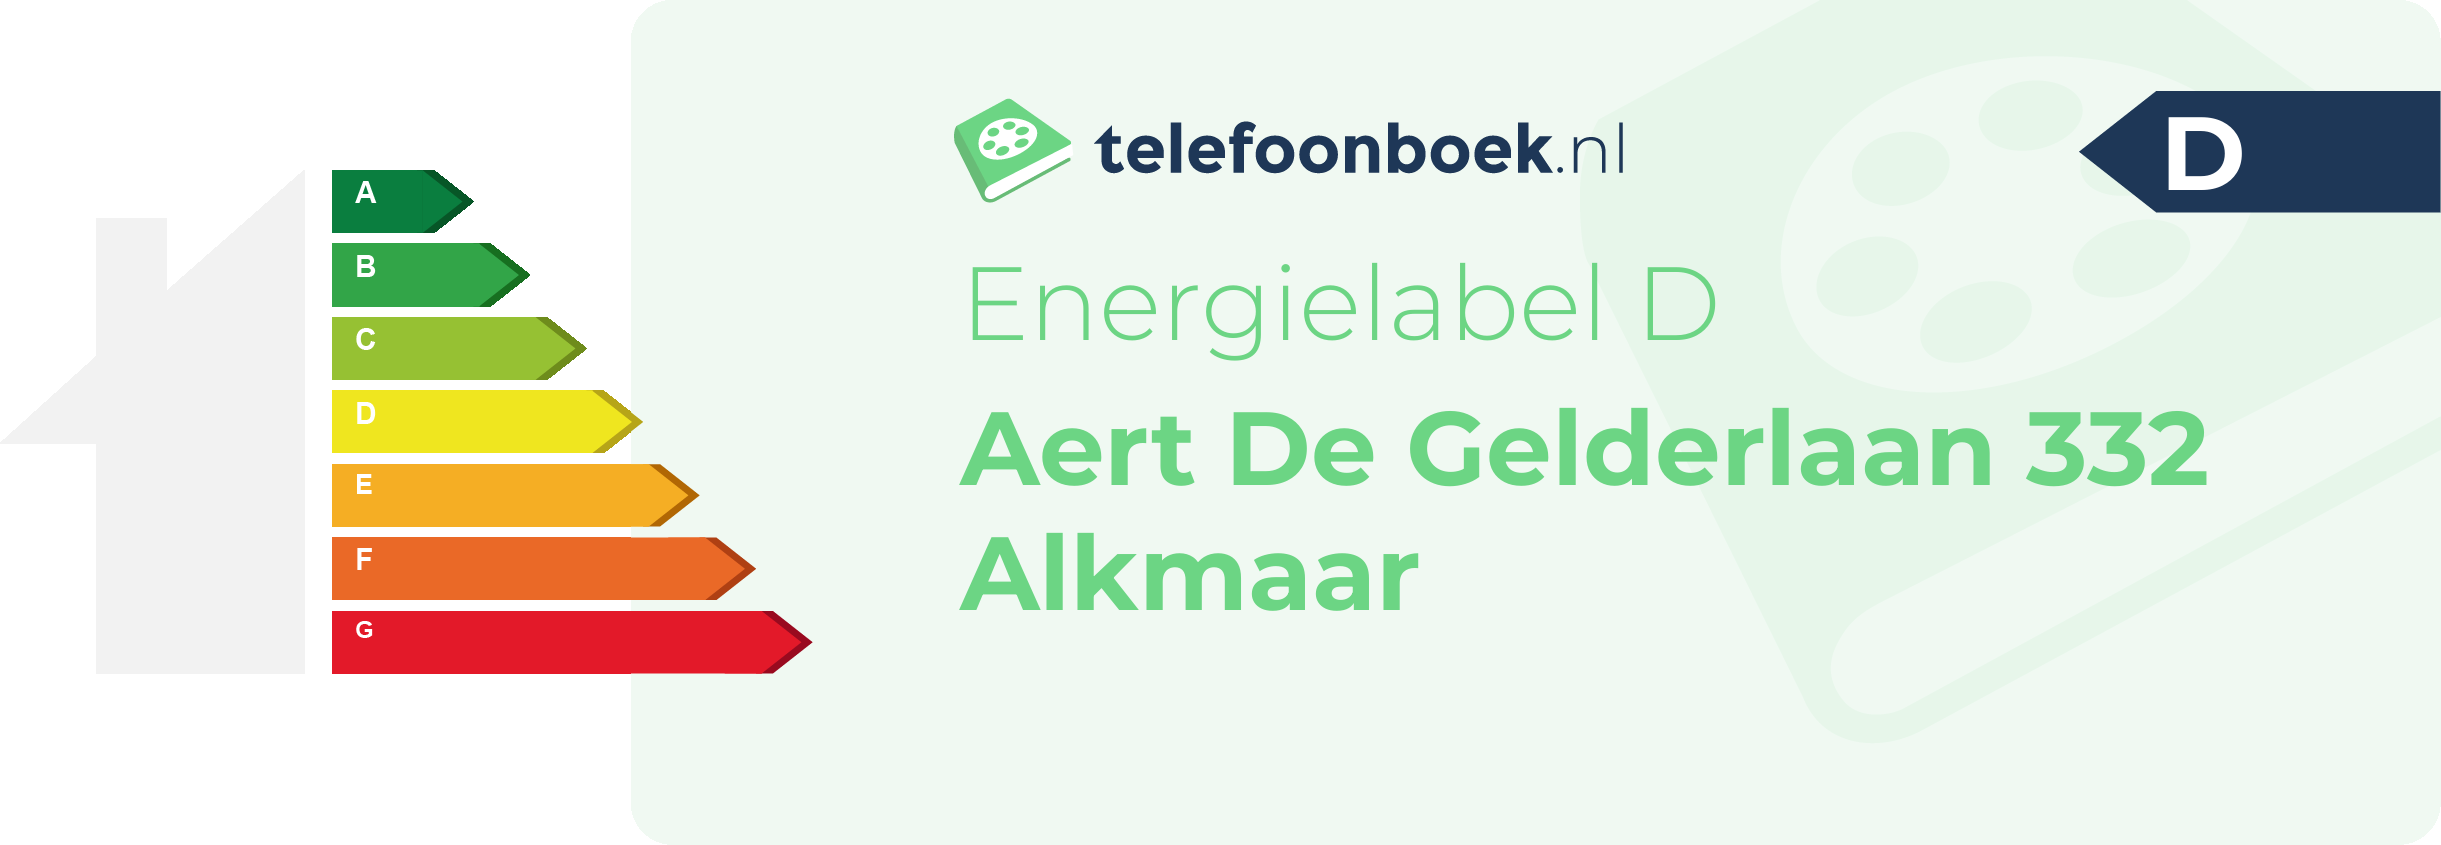 Energielabel Aert De Gelderlaan 332 Alkmaar